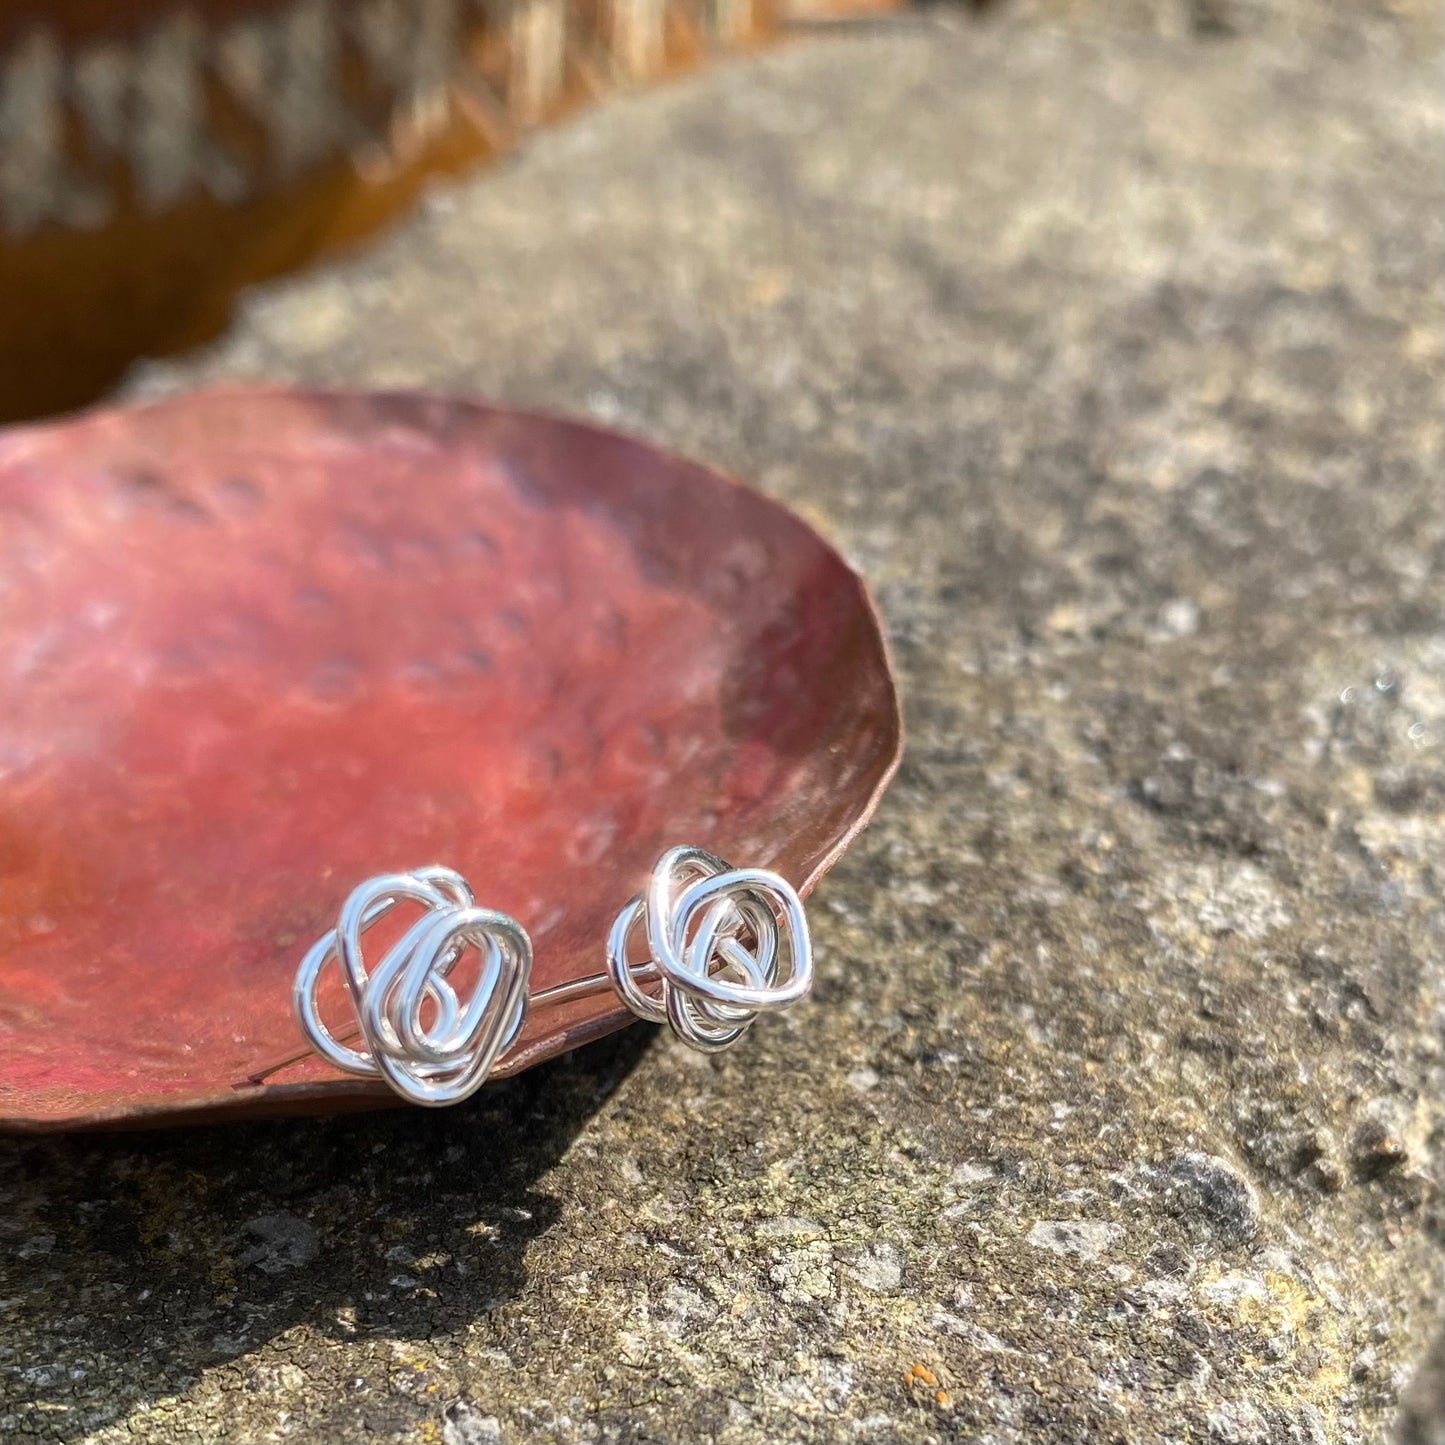 Sterling silver wire knot earrings